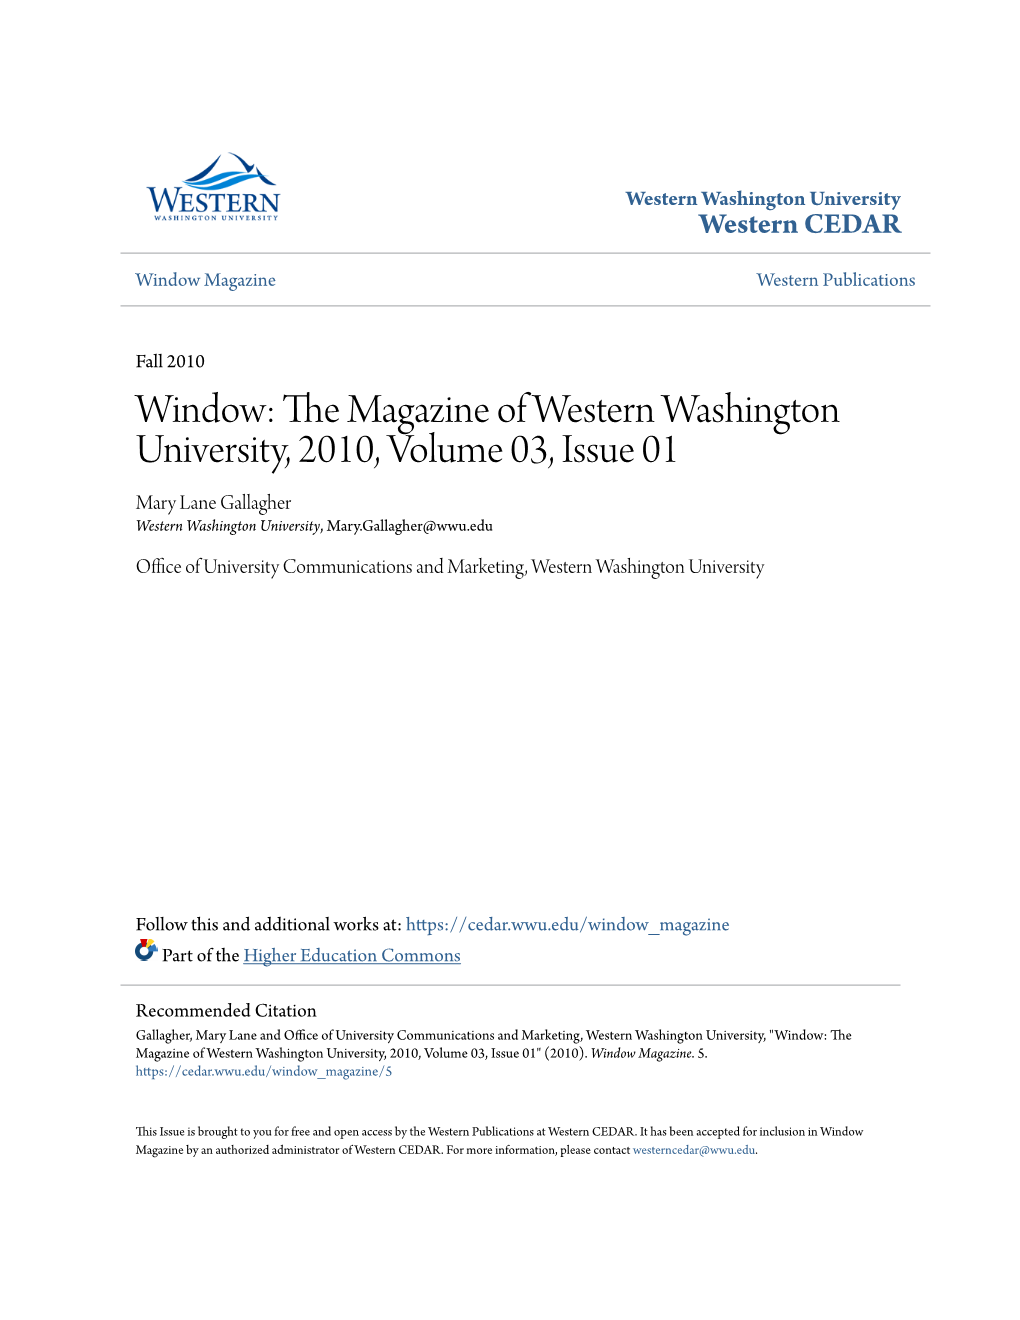 Window: the Magazine of Western Washington University, 2010, Volume 03, Issue 01" (2010)